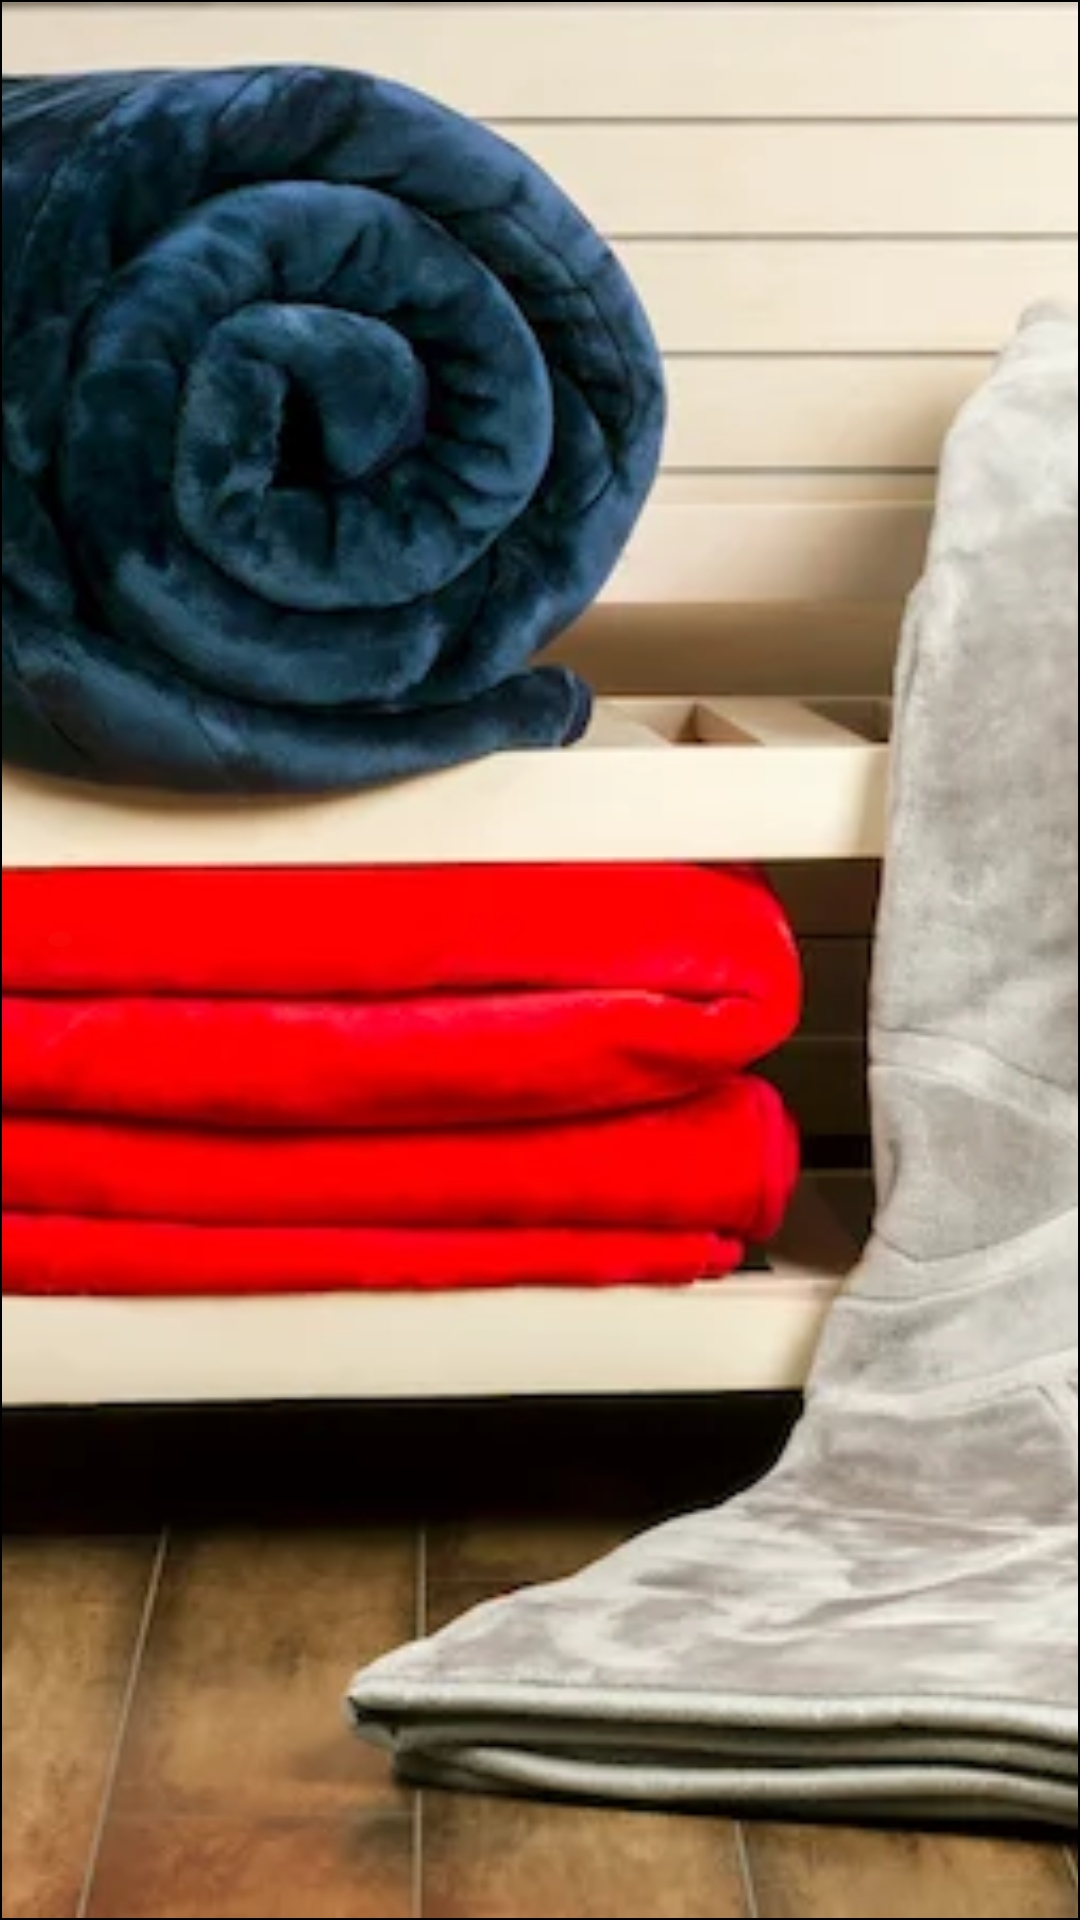 घर में मोटे कंबल को धोने का आसान तरीका